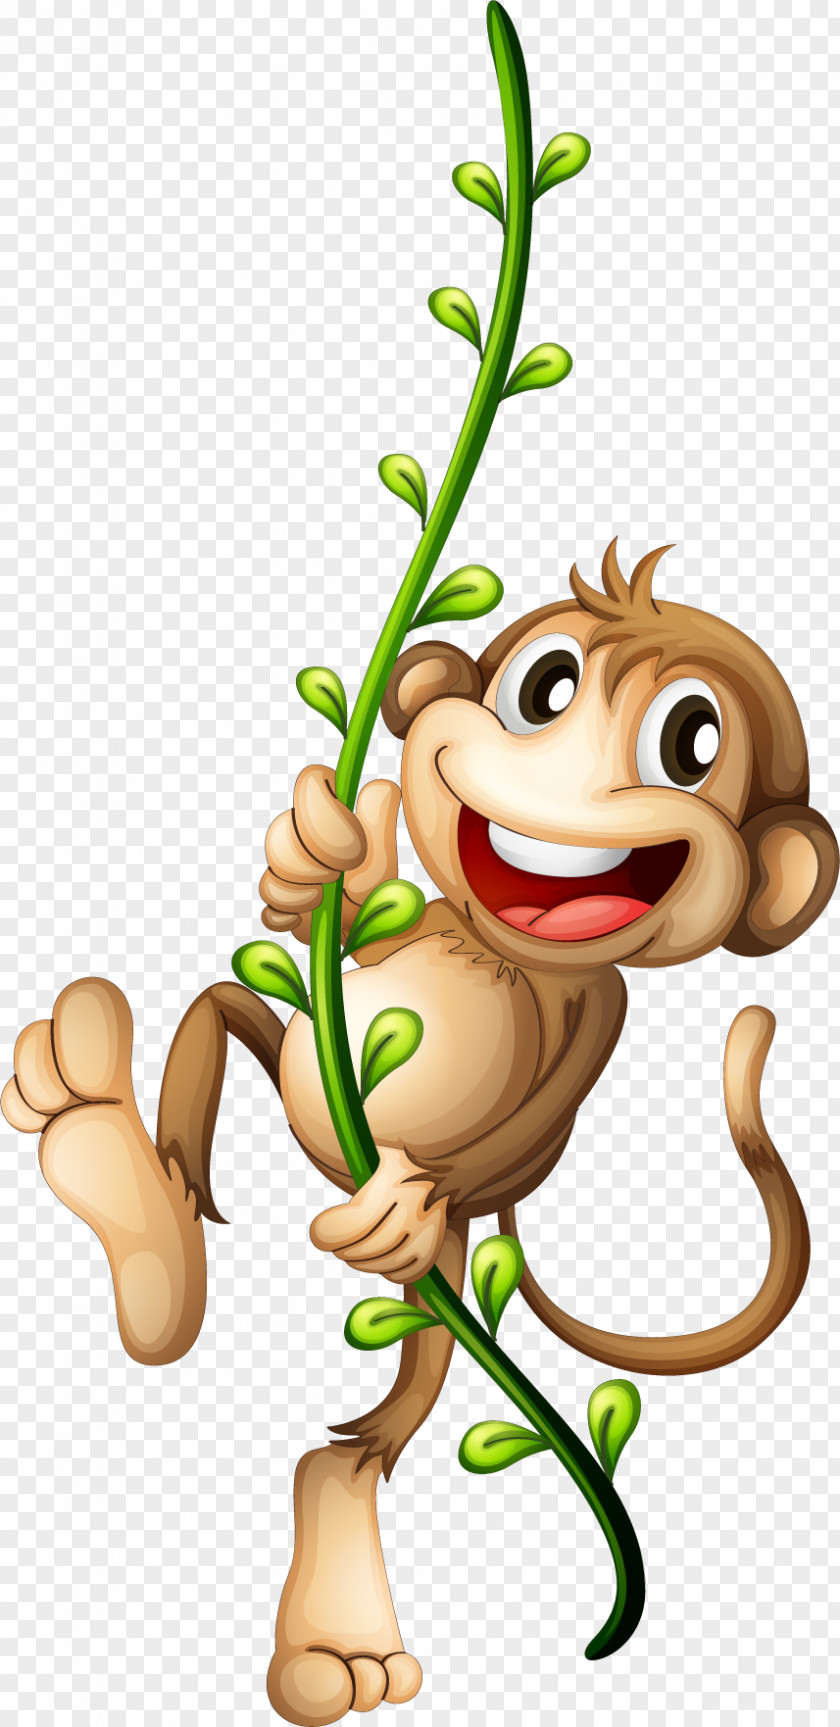 Monkey Primate Chimpanzee Vine PNG